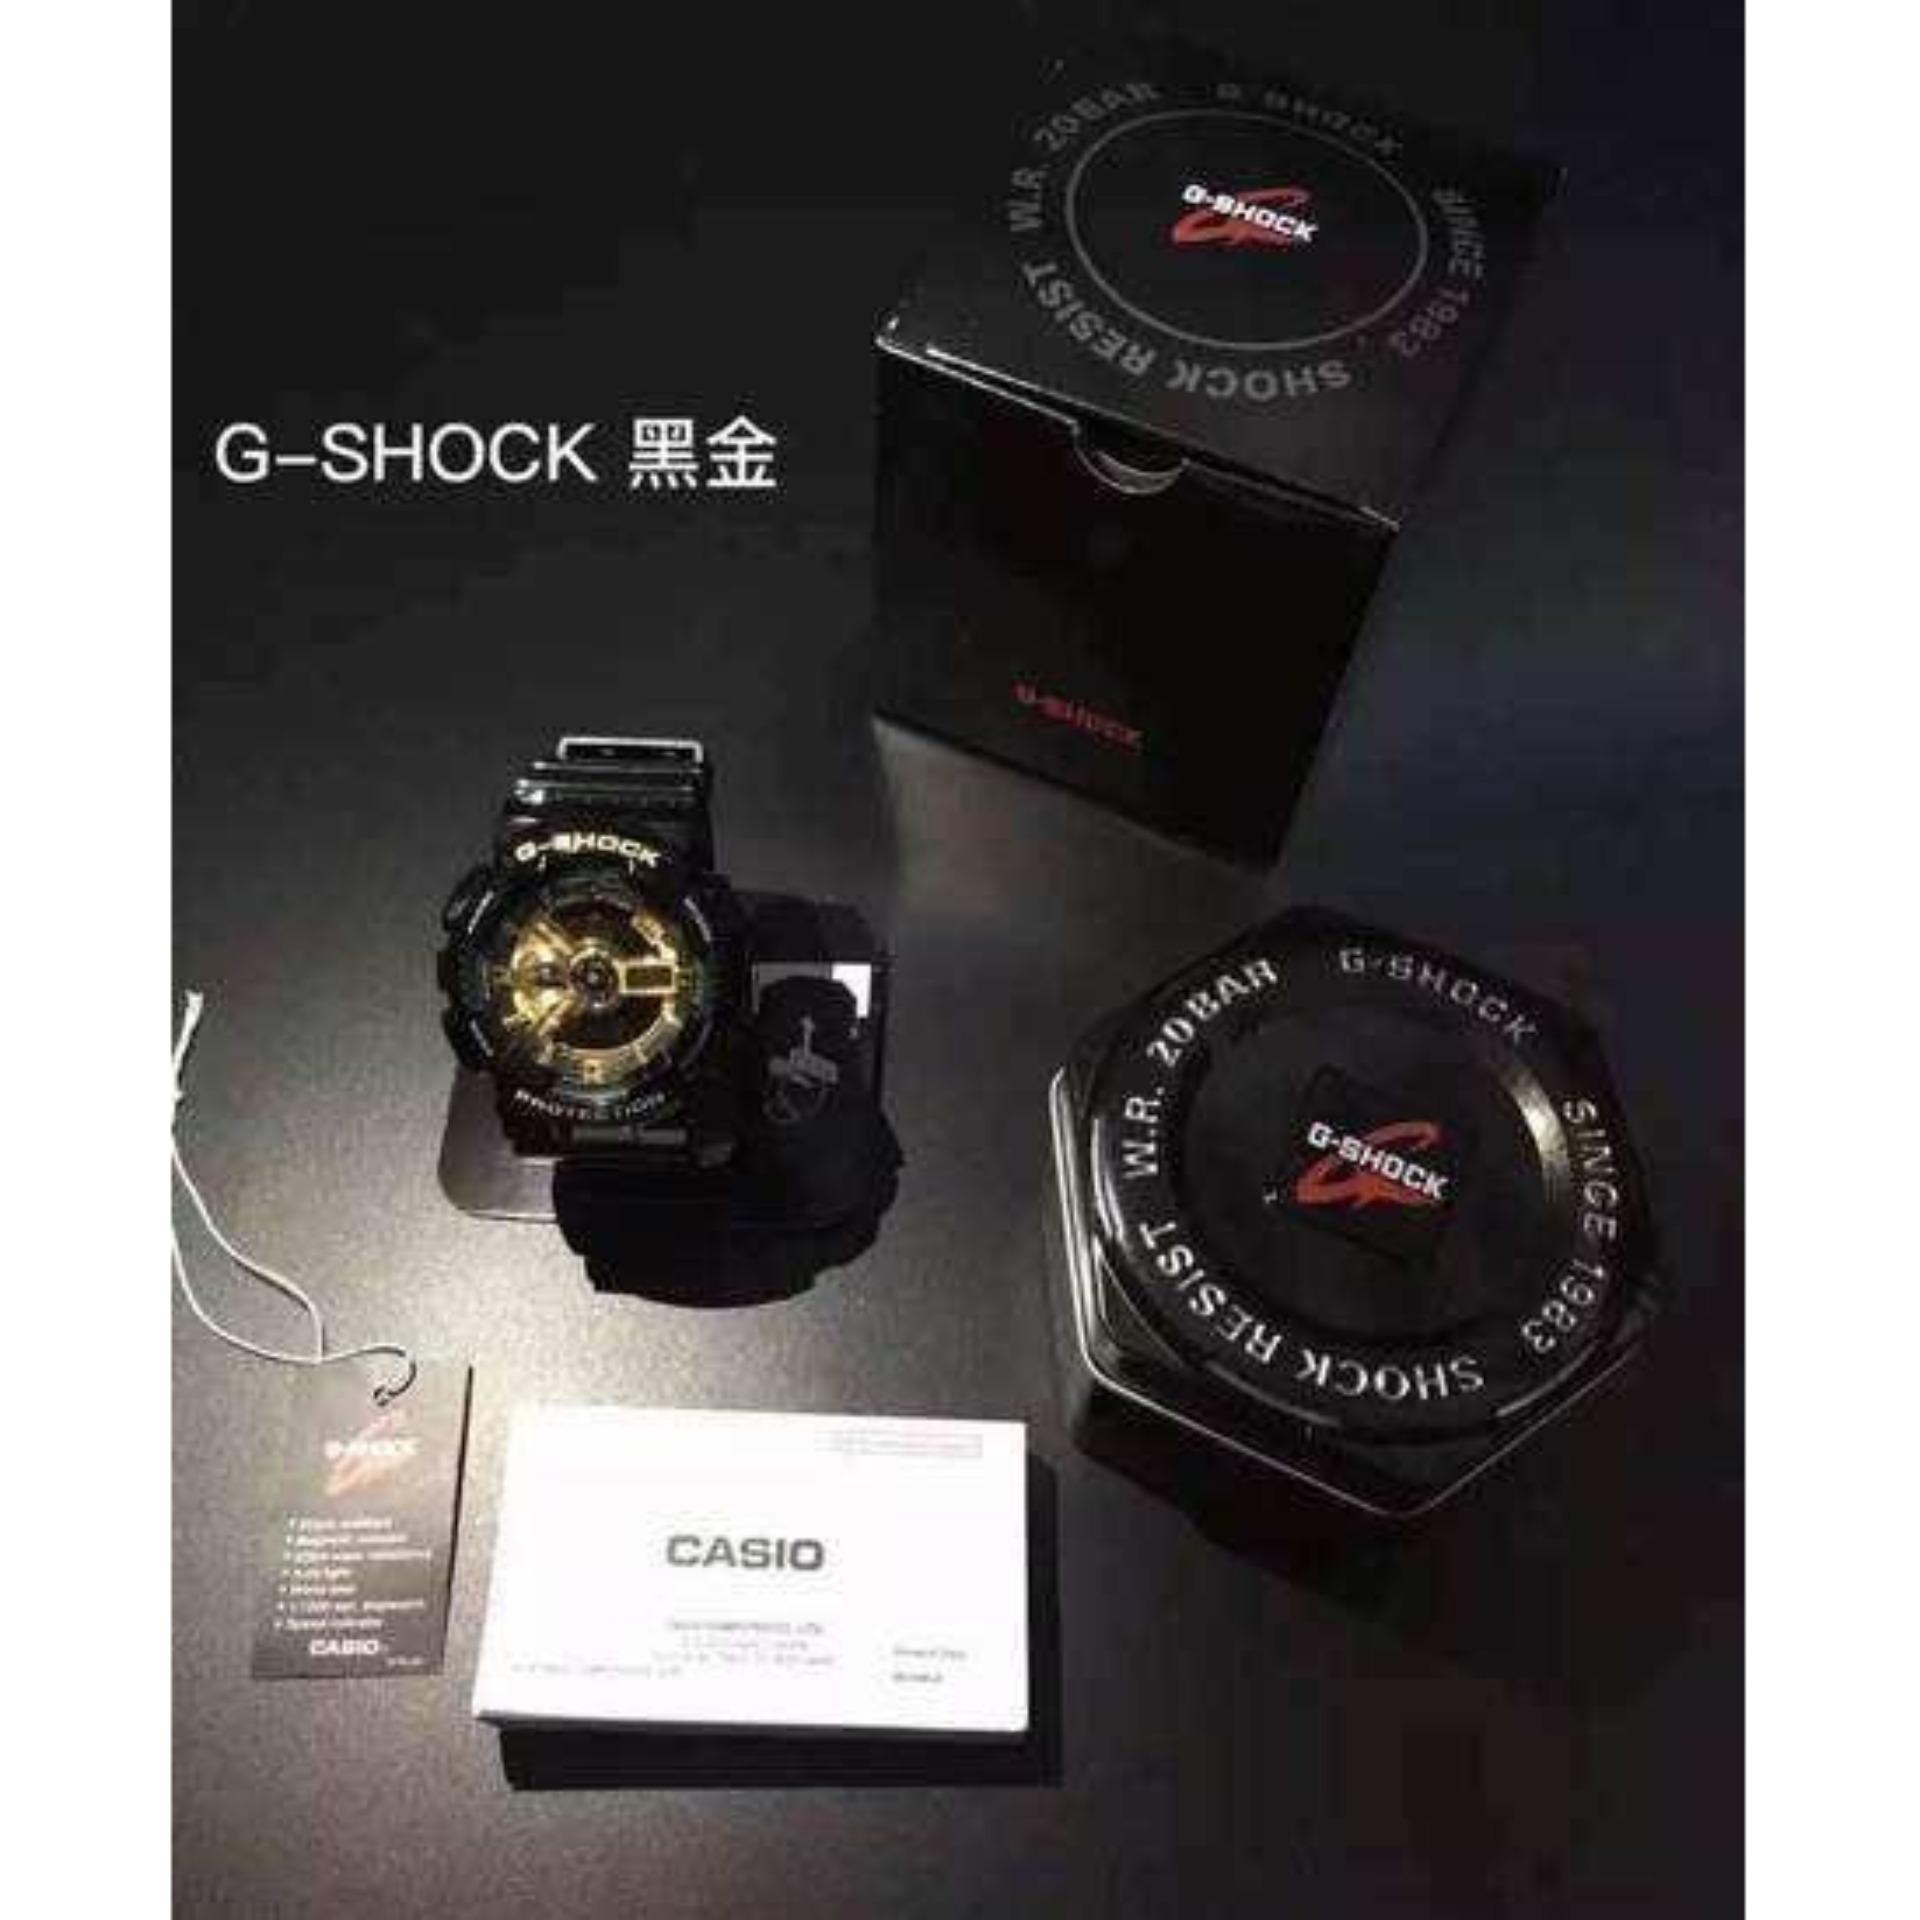 ภาพอธิบายเพิ่มเติมของ CASIO G-Shock นาฬิกาผู้ชาย GOLD SERIES รุ่น GA-110GB-1ADR (ประกัน)มีการรับประกันจากผู้ขาย(1 ปี)